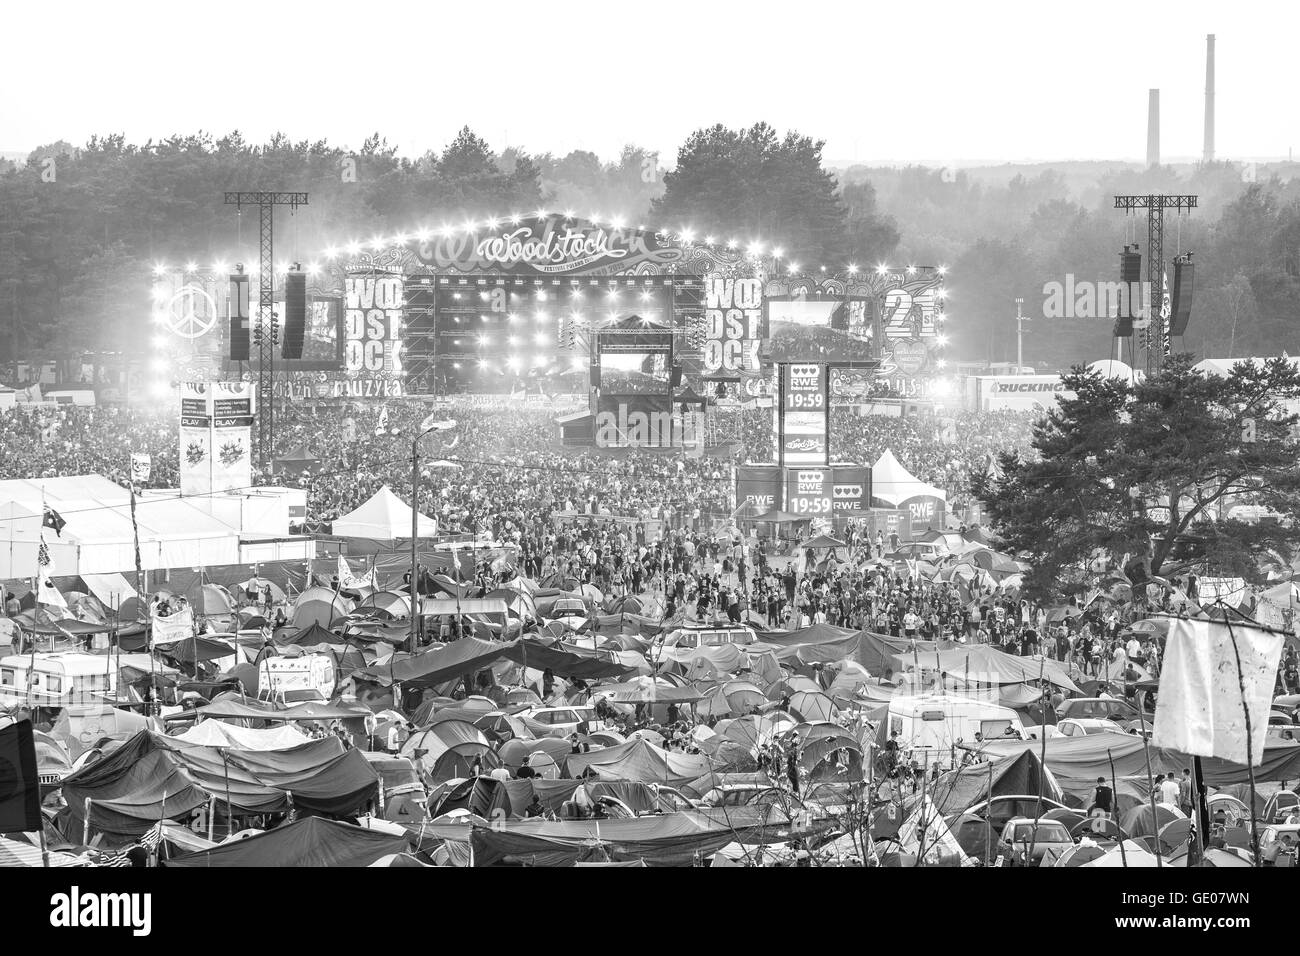 Immagine in bianco e nero del palco principale e tende al XXI festival di Woodstock in Polonia. Foto Stock